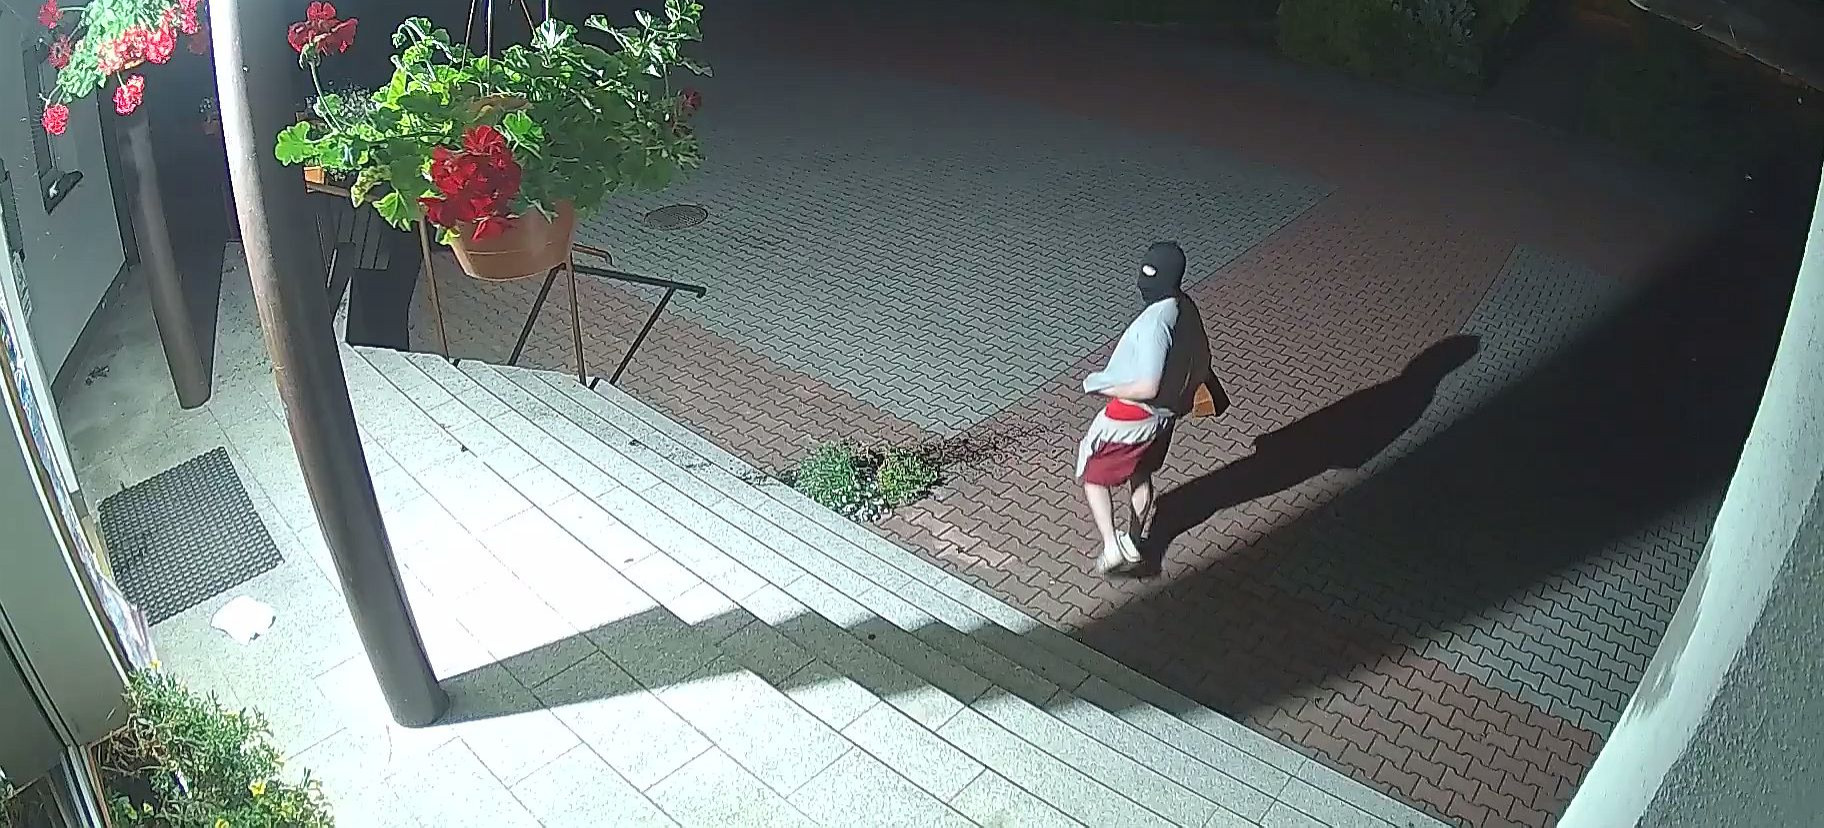 SANOK: Akt wandalizmu na terenie szkoły! Zamaskowany mężczyzna niszczy przedmioty i sika po ścianie! (VIDEO)